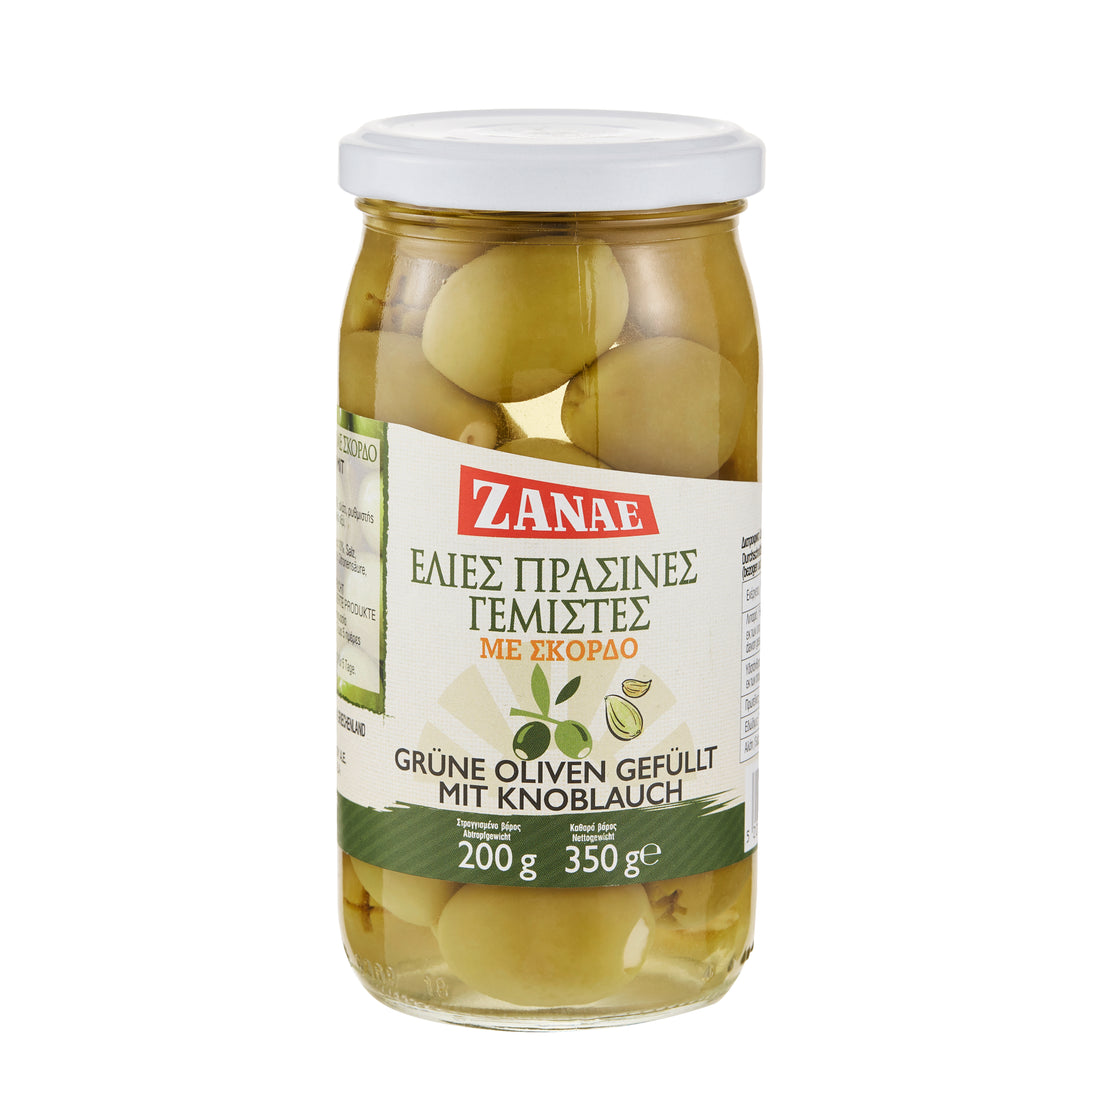 Grüne Oliven gefüllt mit Knoblauch Zanae 350 g